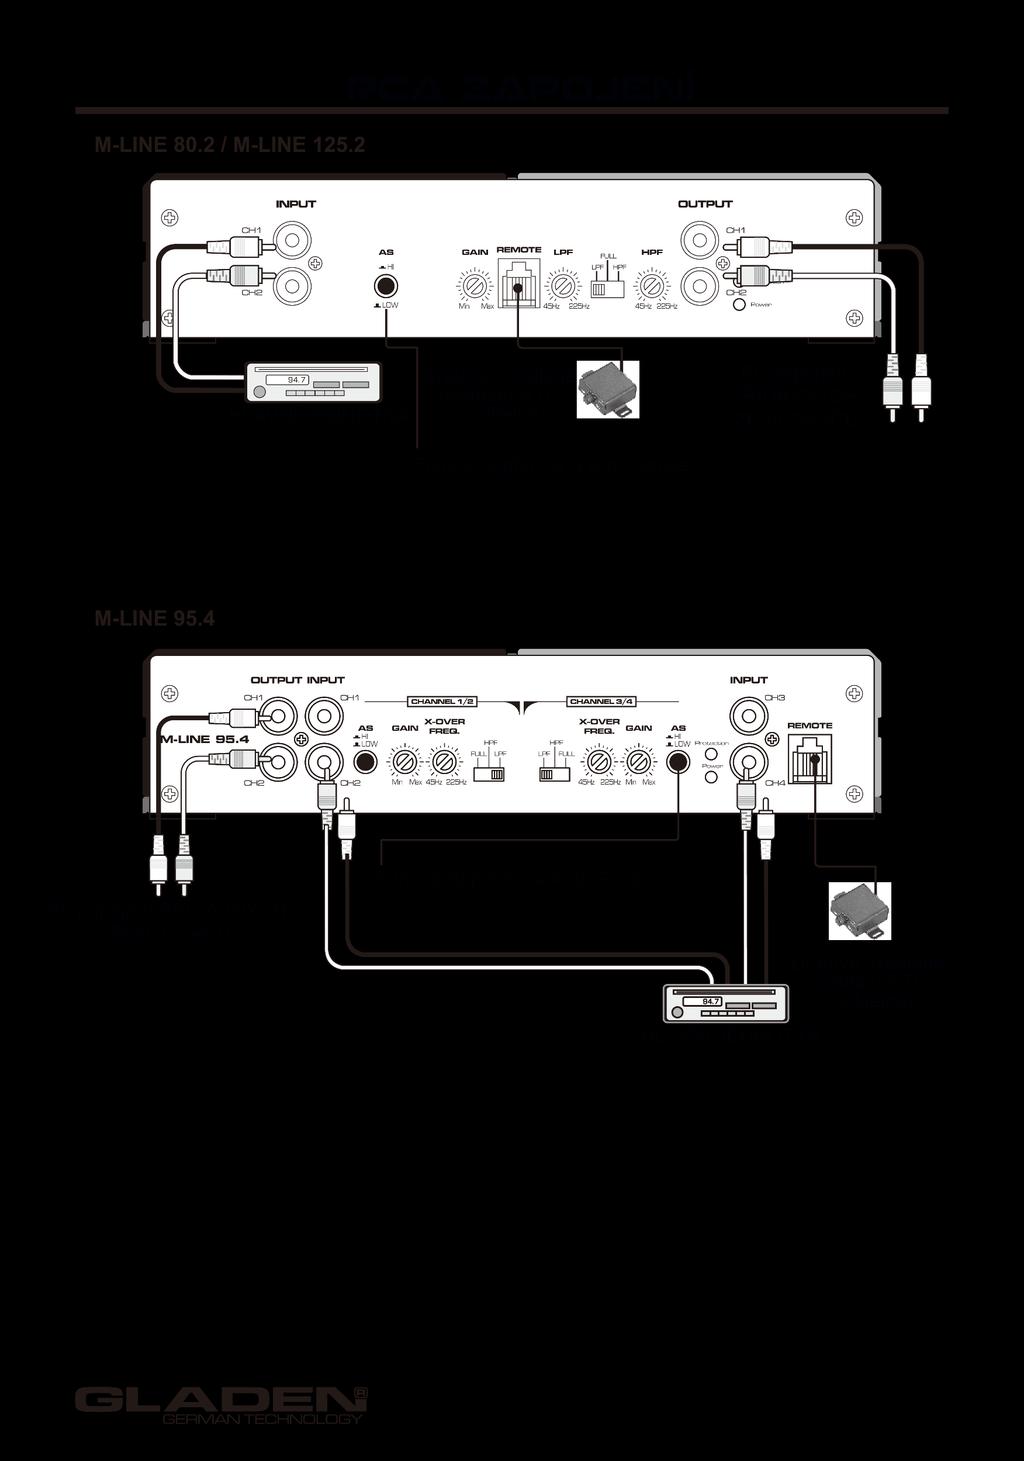 Zesilovač GLADEN poskytuje RCA vstupy, které jsou připojeny audio kabelem do předzesílených výstupů hlavní jednotky.